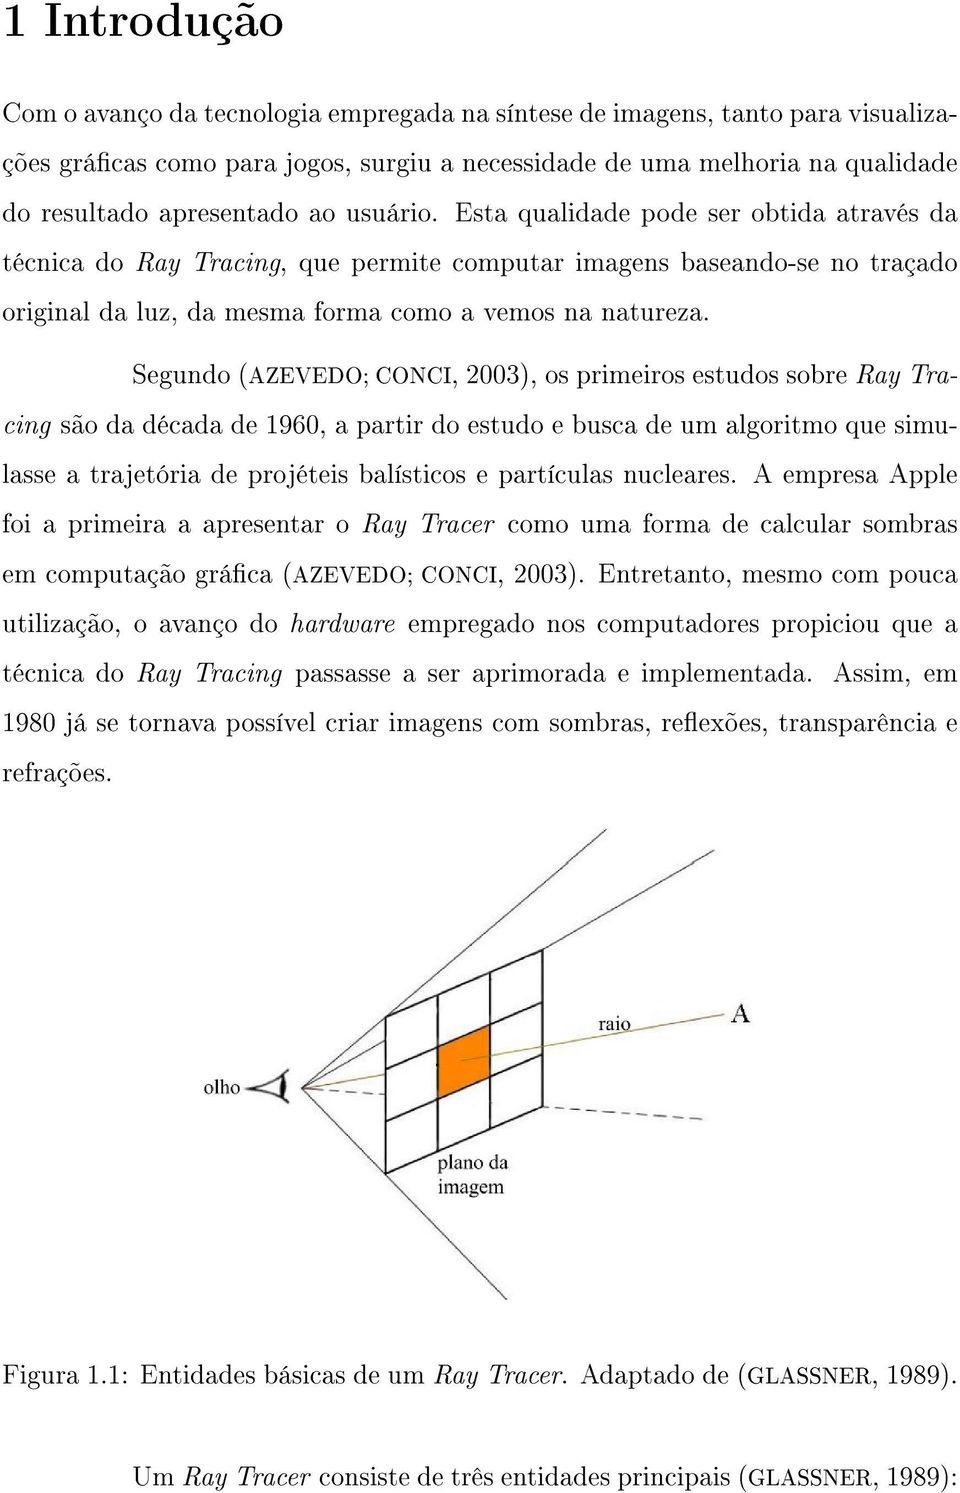 Segundo (AZEVEDO; CONCI, 2003), os primeiros estudos sobre Ray Tracing são da década de 1960, a partir do estudo e busca de um algoritmo que simulasse a trajetória de projéteis balísticos e